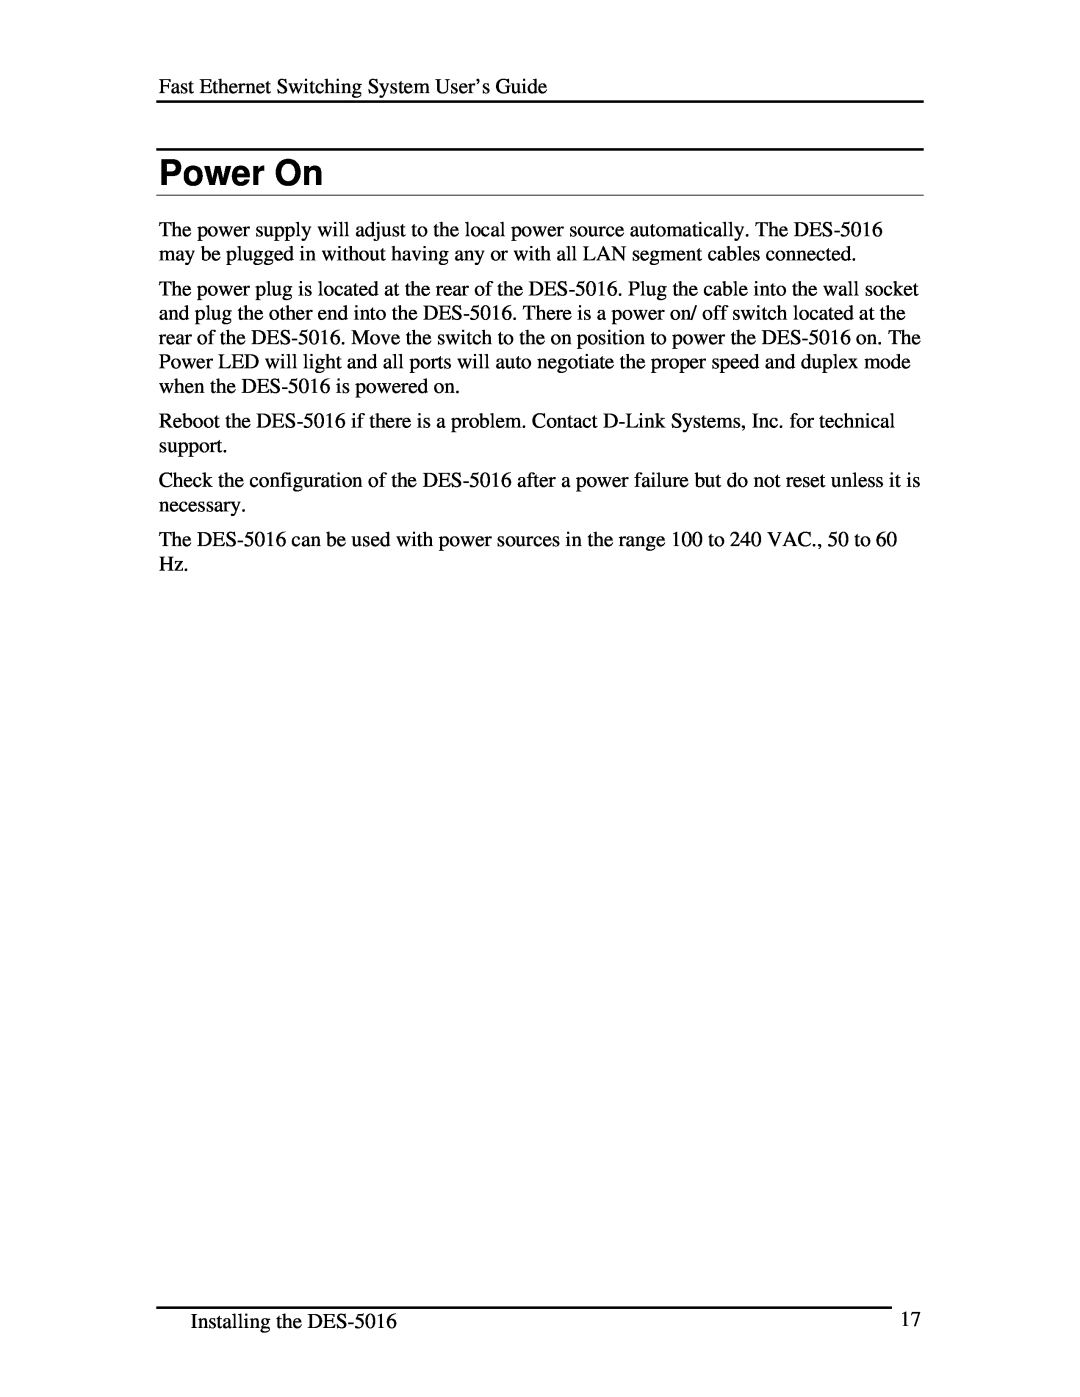 D-Link DES-5016 manual Power On 